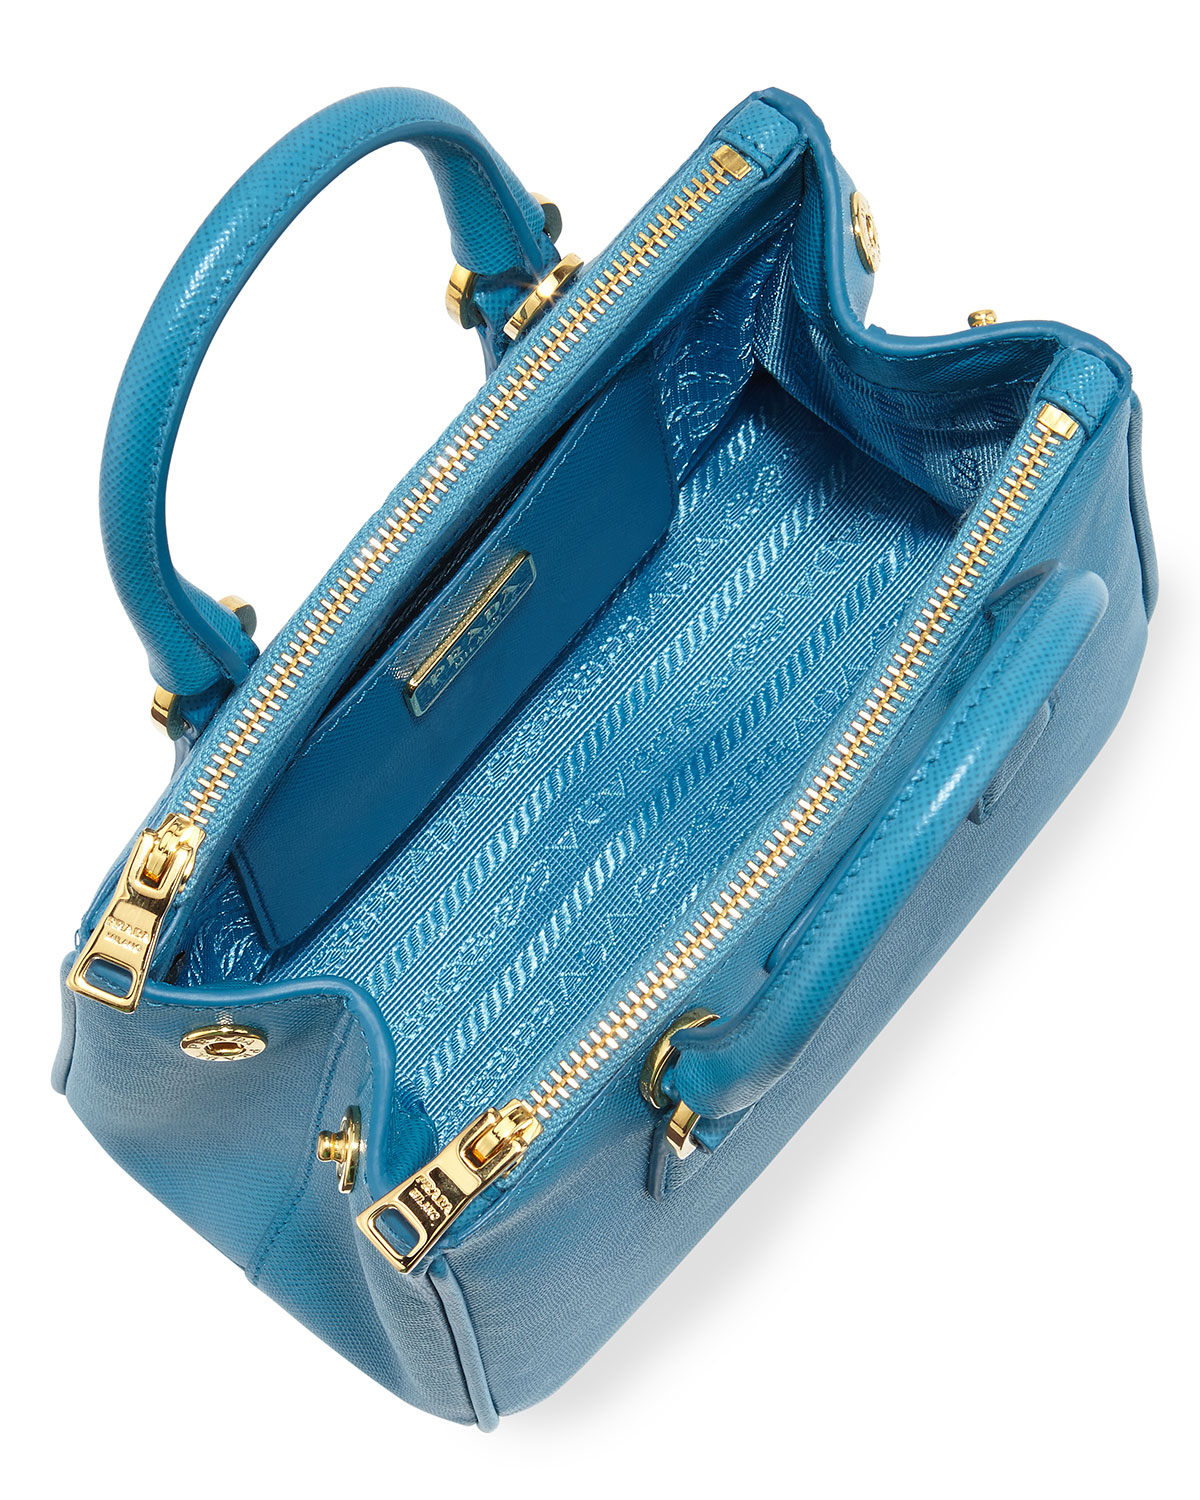 Prada Saffiano Mini Galleria Crossbody Bag in Turquoise (Blue) - Lyst